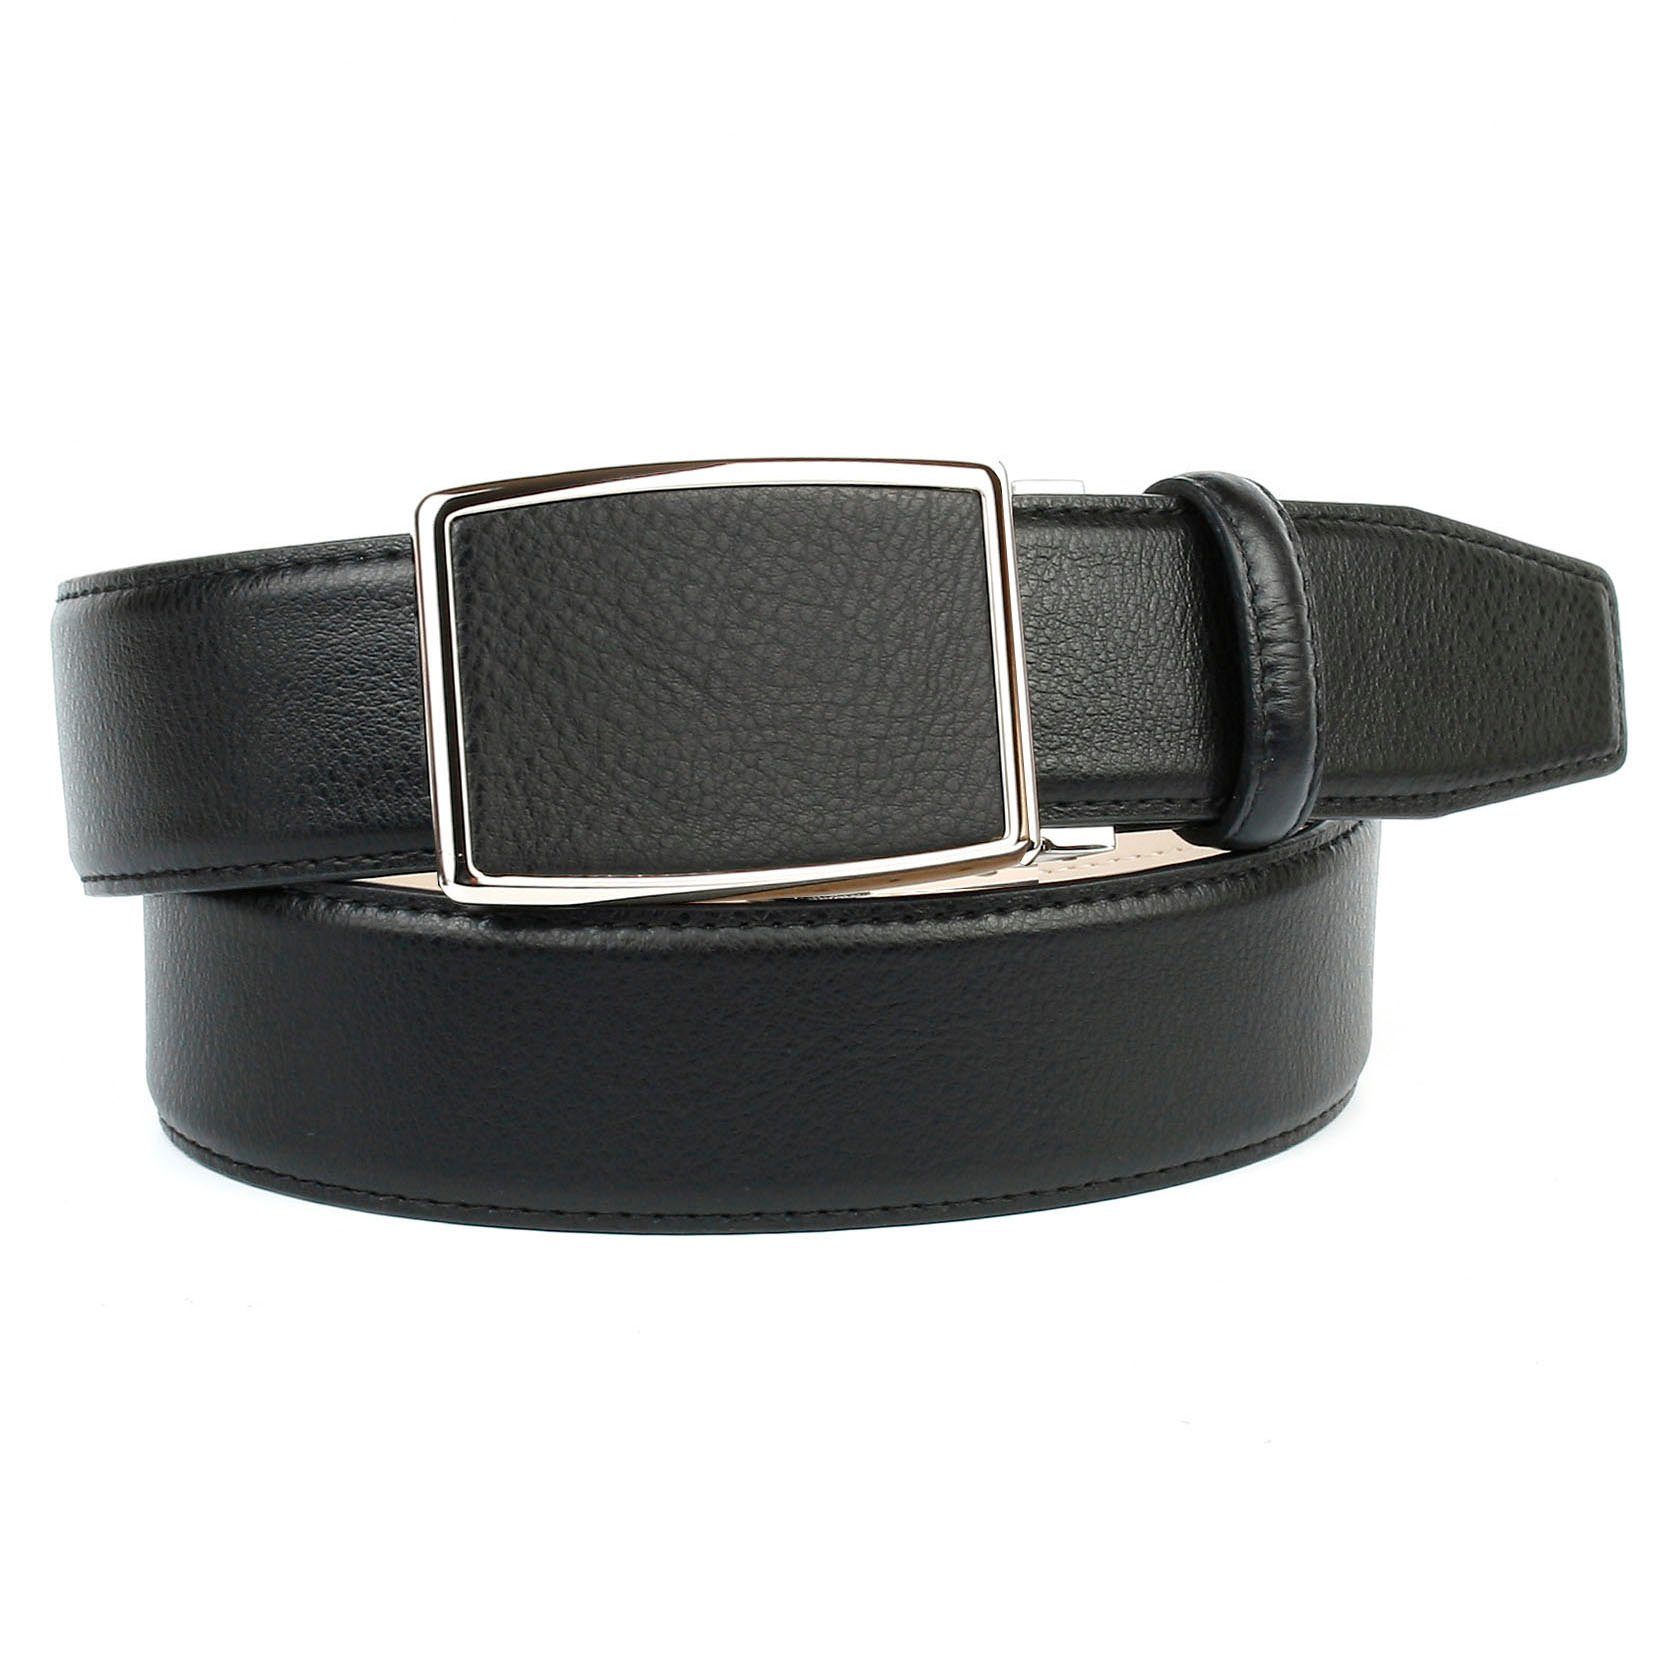 Anthoni Crown Ledergürtel in schwarz mit Automatik Schließe | Anzuggürtel